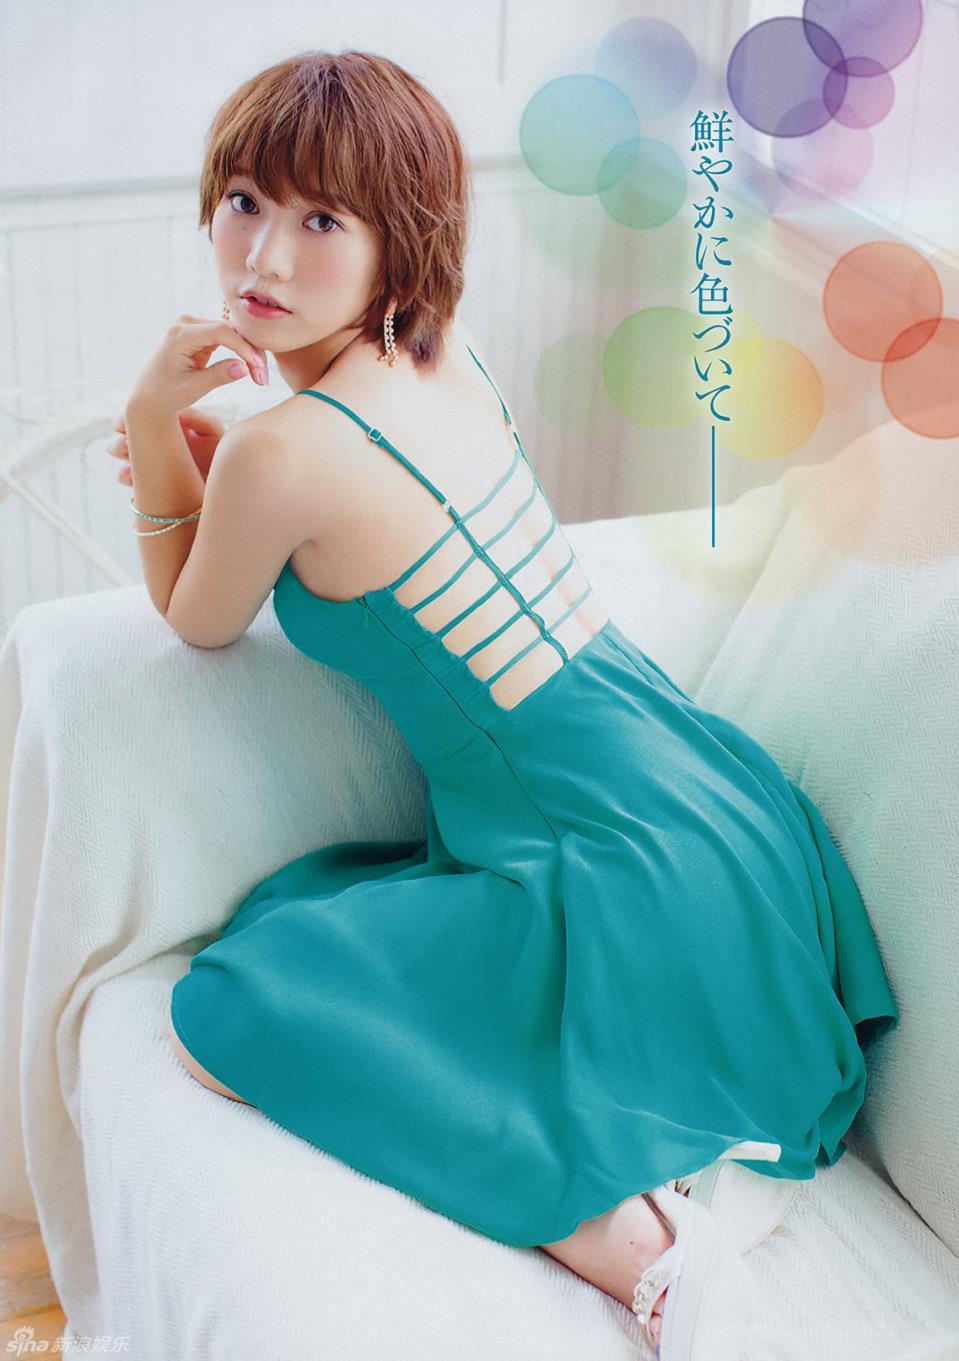 AKB48高城亚树发性感写真 秀纤腰翘臀,AKB48高城亚树发性感写真 秀纤腰翘臀